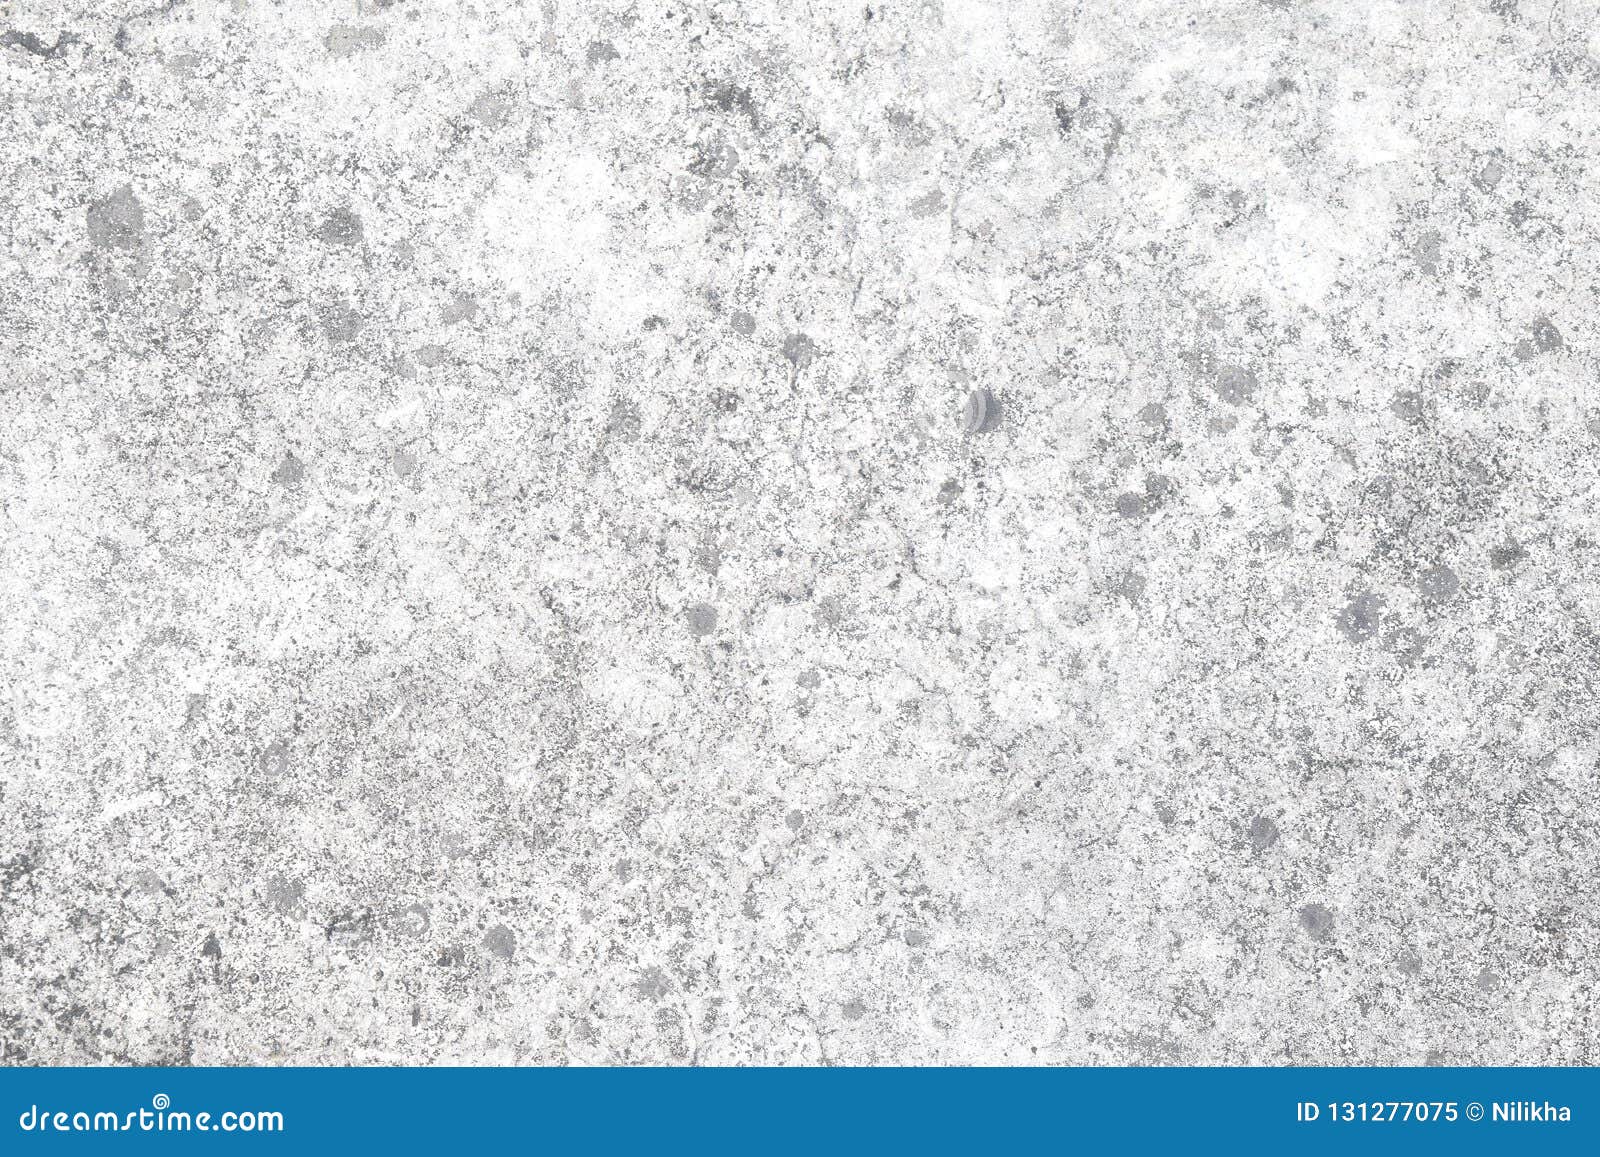  White Concrete Floor Texture  1 Stock Image Image of 